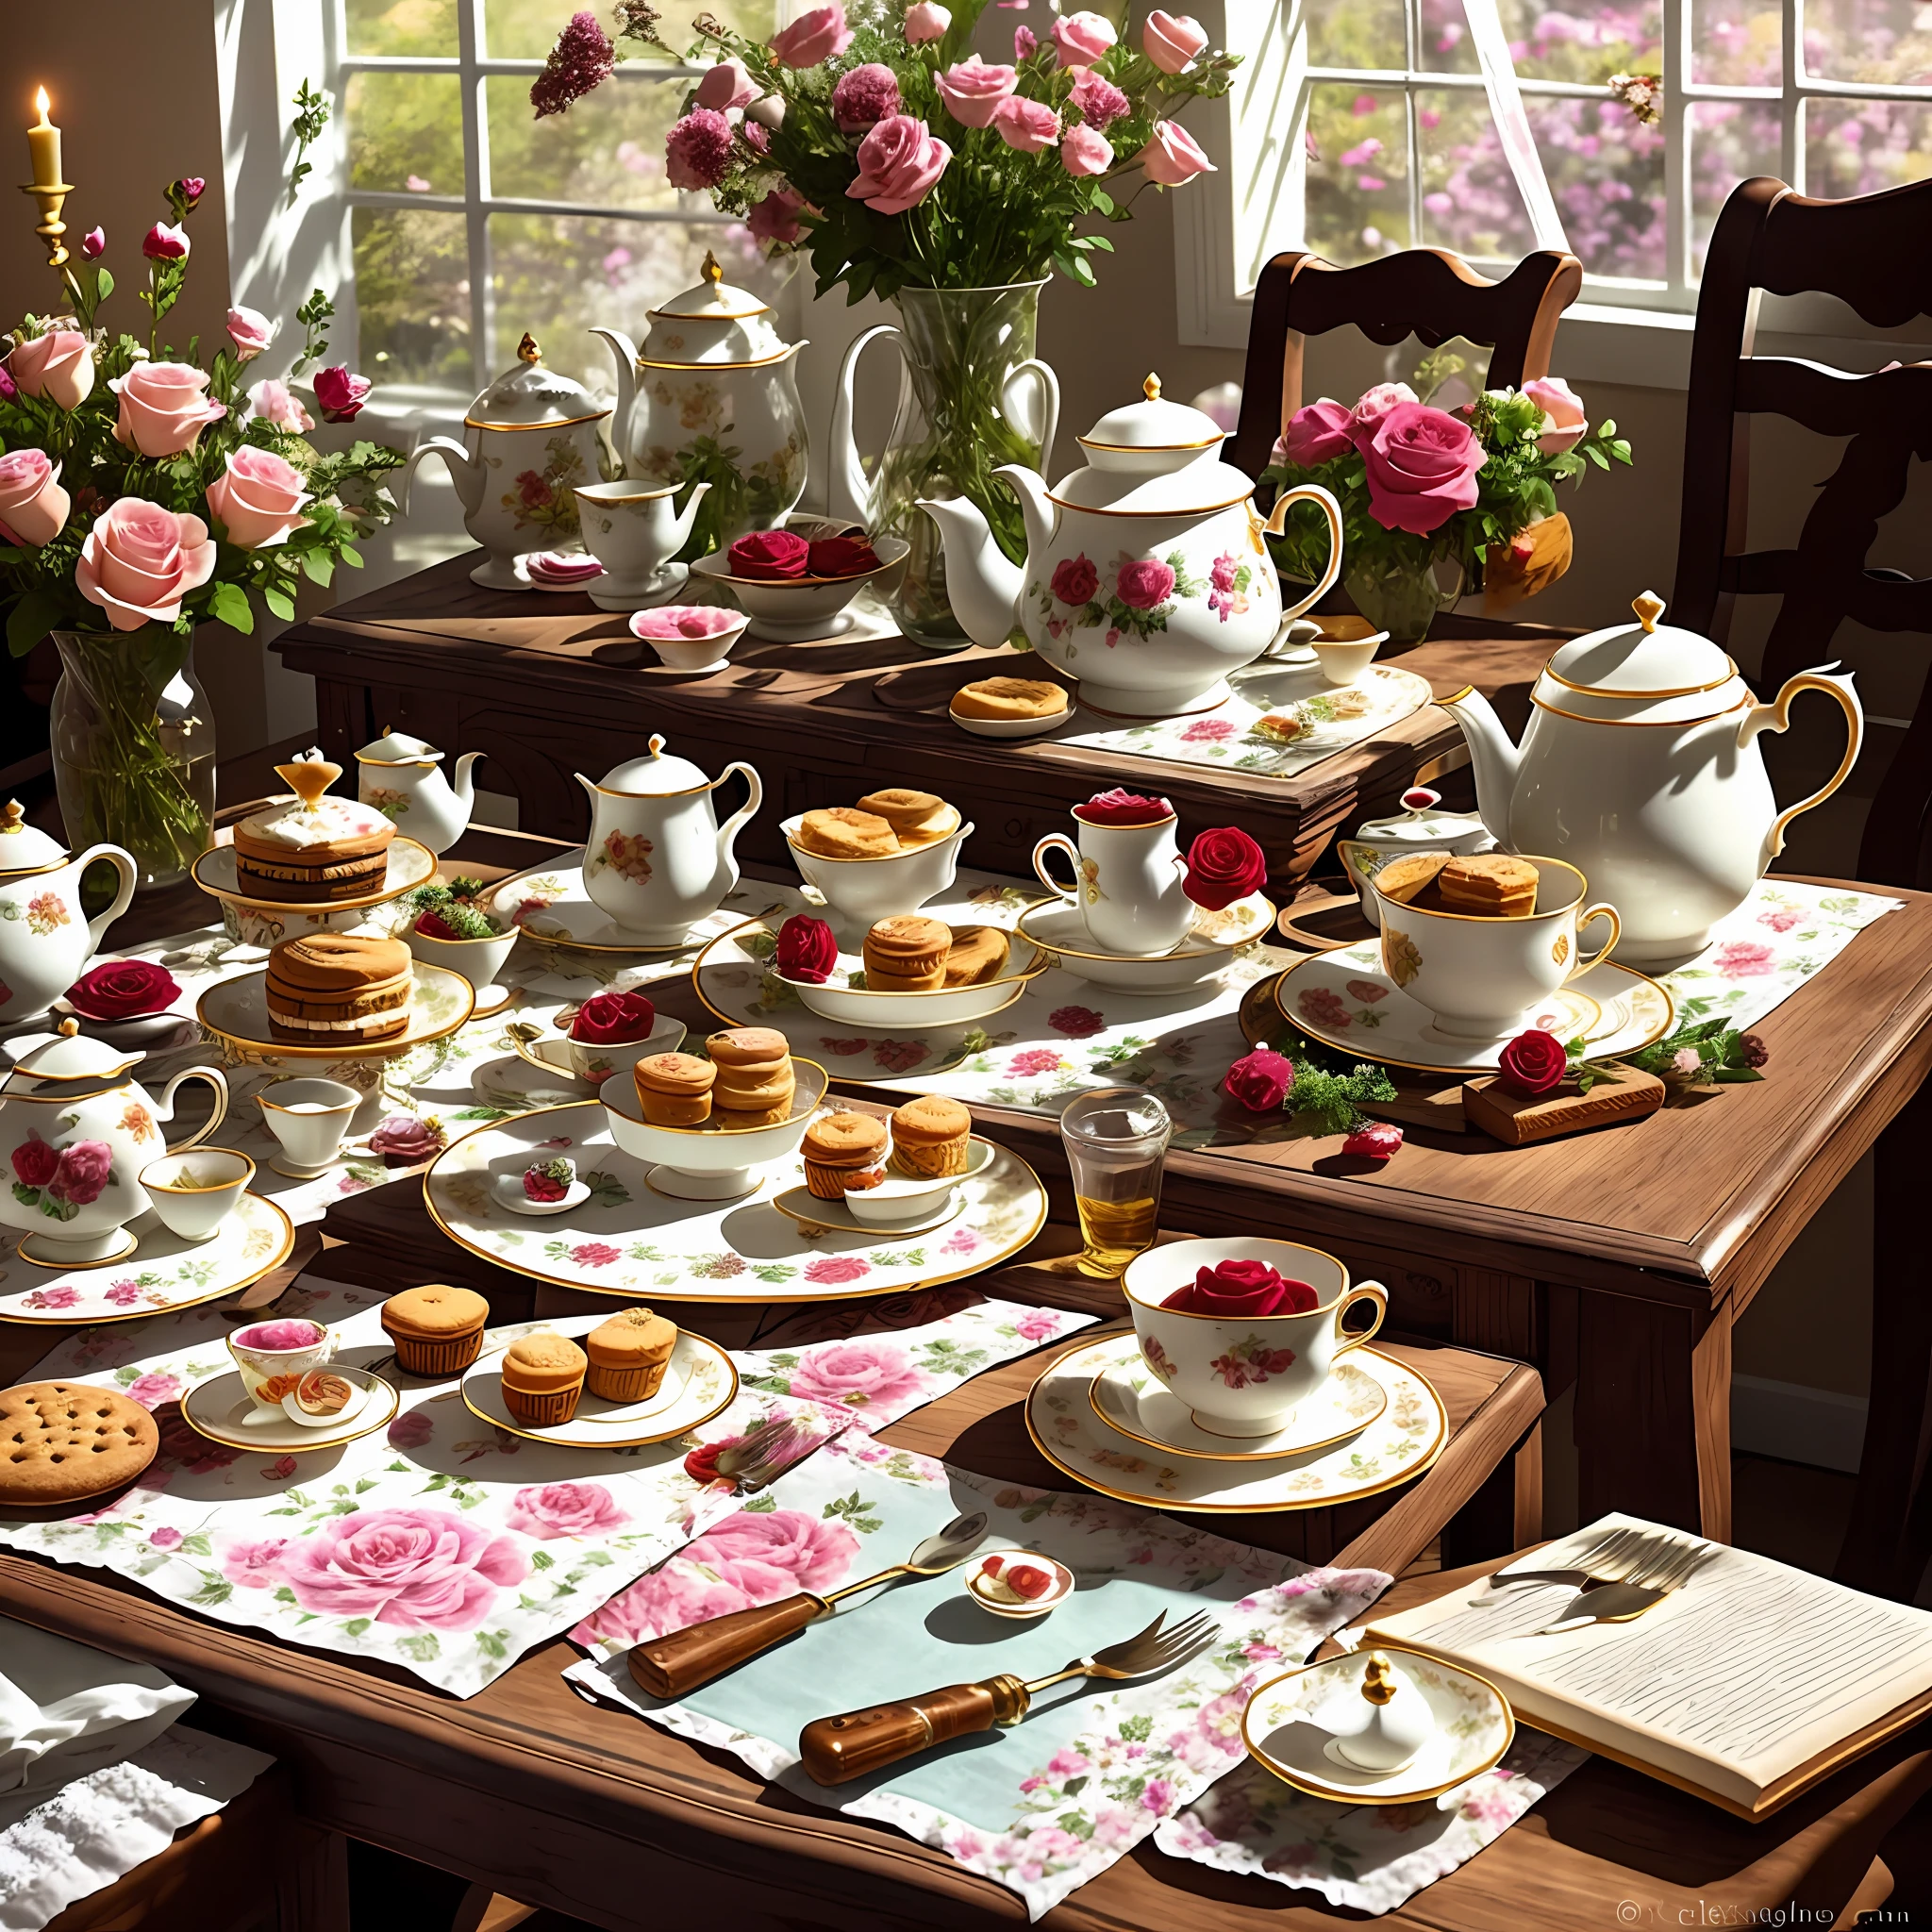 케이크가 놓인 테이블, 비스킷과 다과, 왼쪽 상단에 아름다운 장미 몇 송이가 꽂혀 있는 꽃병, 테이블 위에 유럽 찻잔과 찻주전자, 유럽식 애프터눈 티, 오후 햇살이 비치는, 정교하고 아름다운 그림